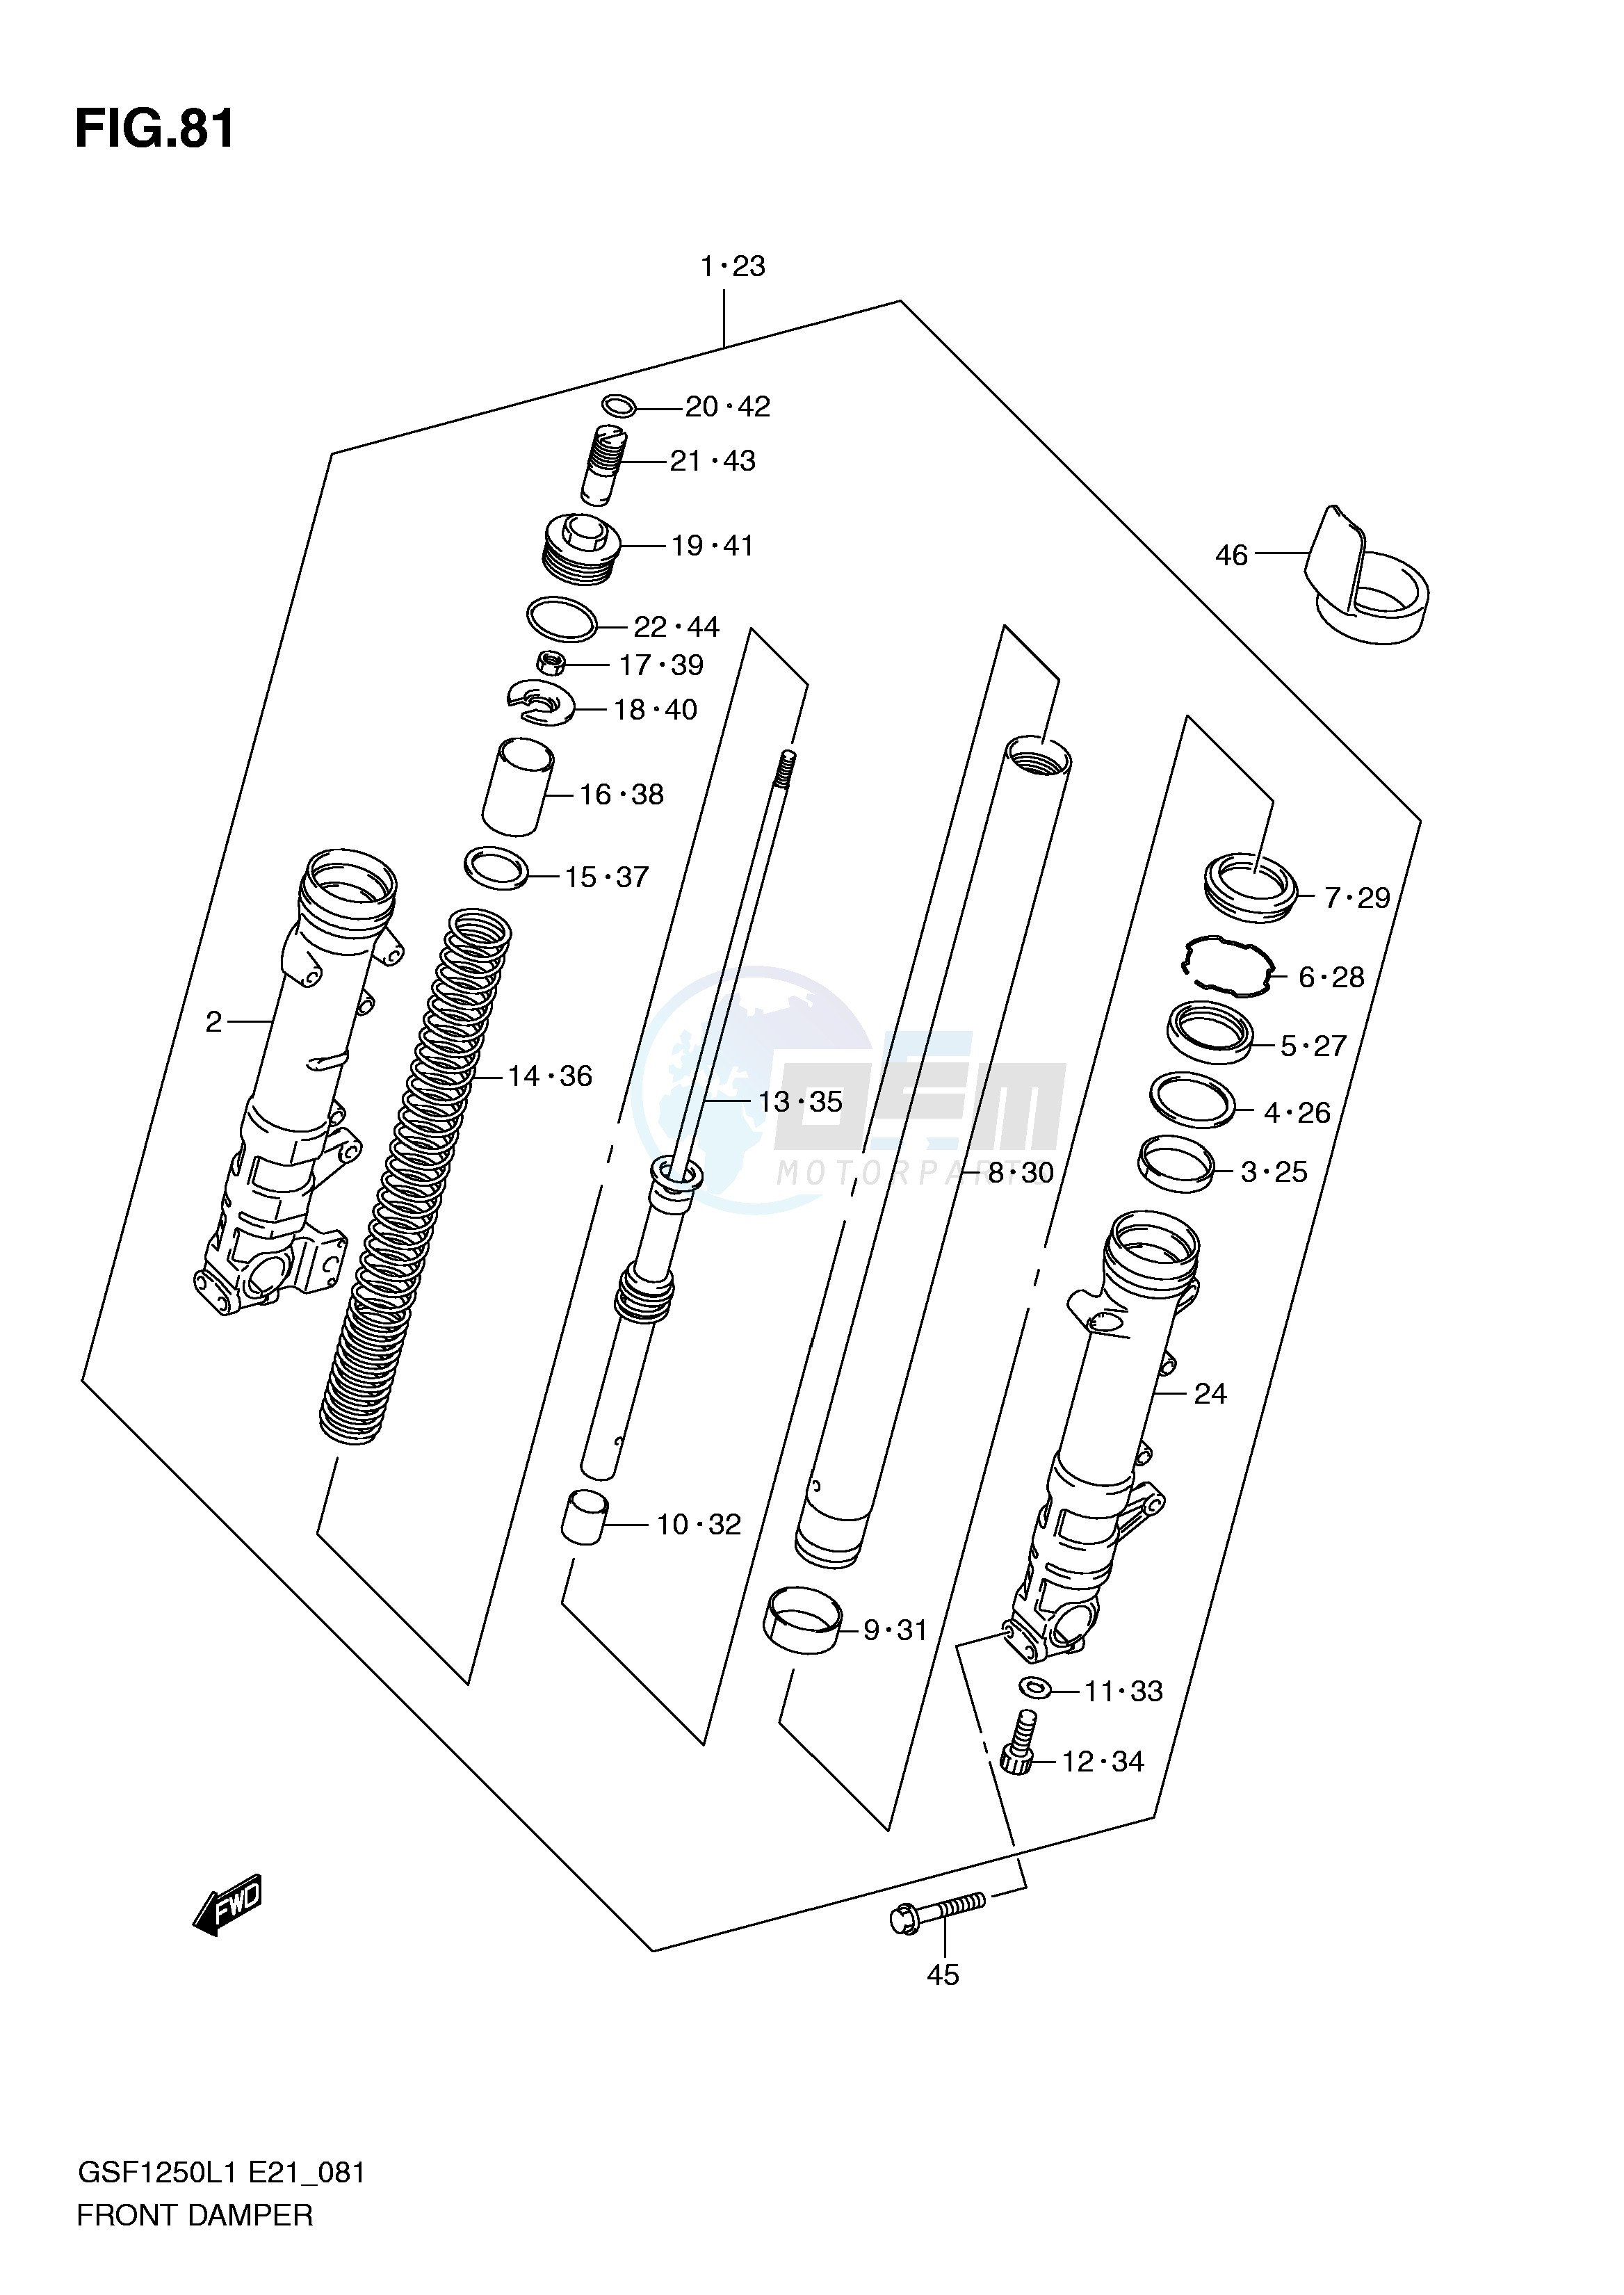 FRONT DAMPER (GSF1250L1 E24) blueprint